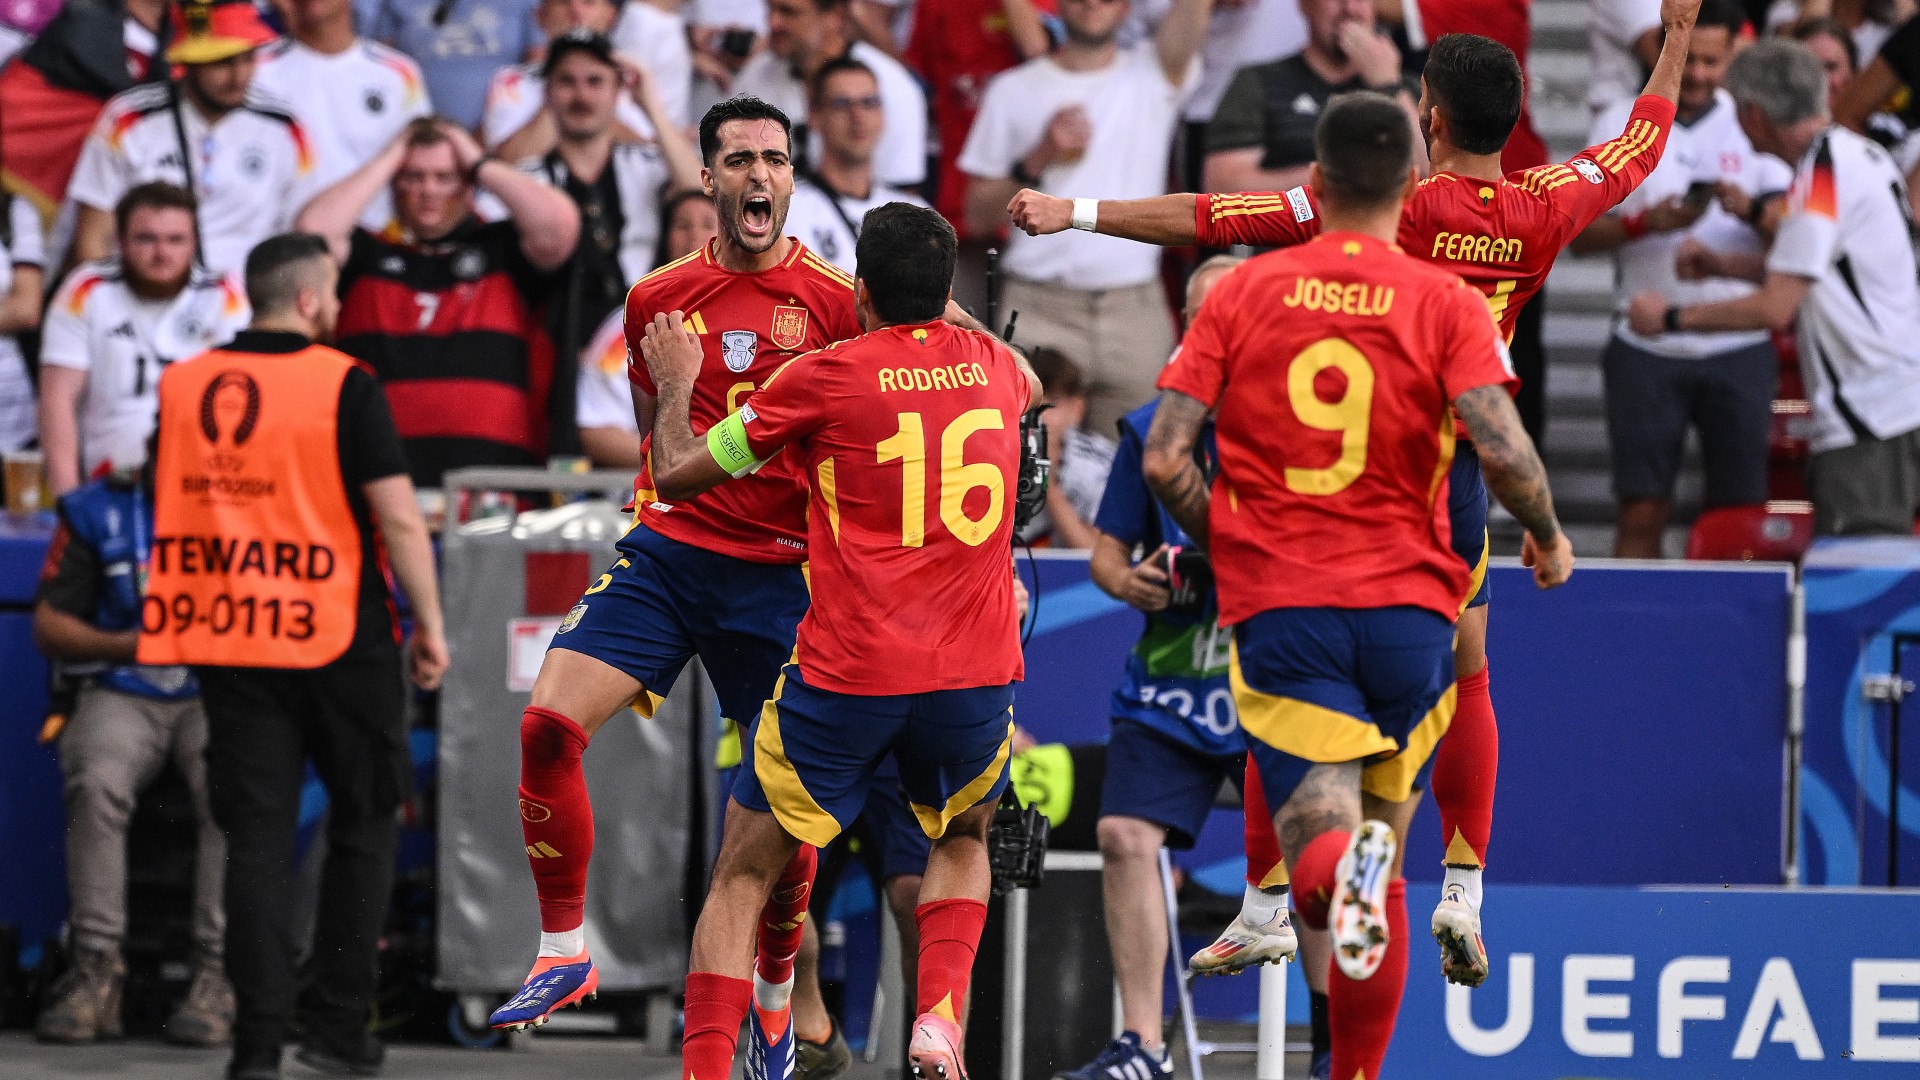 Spain celebrate 'like Euros final'